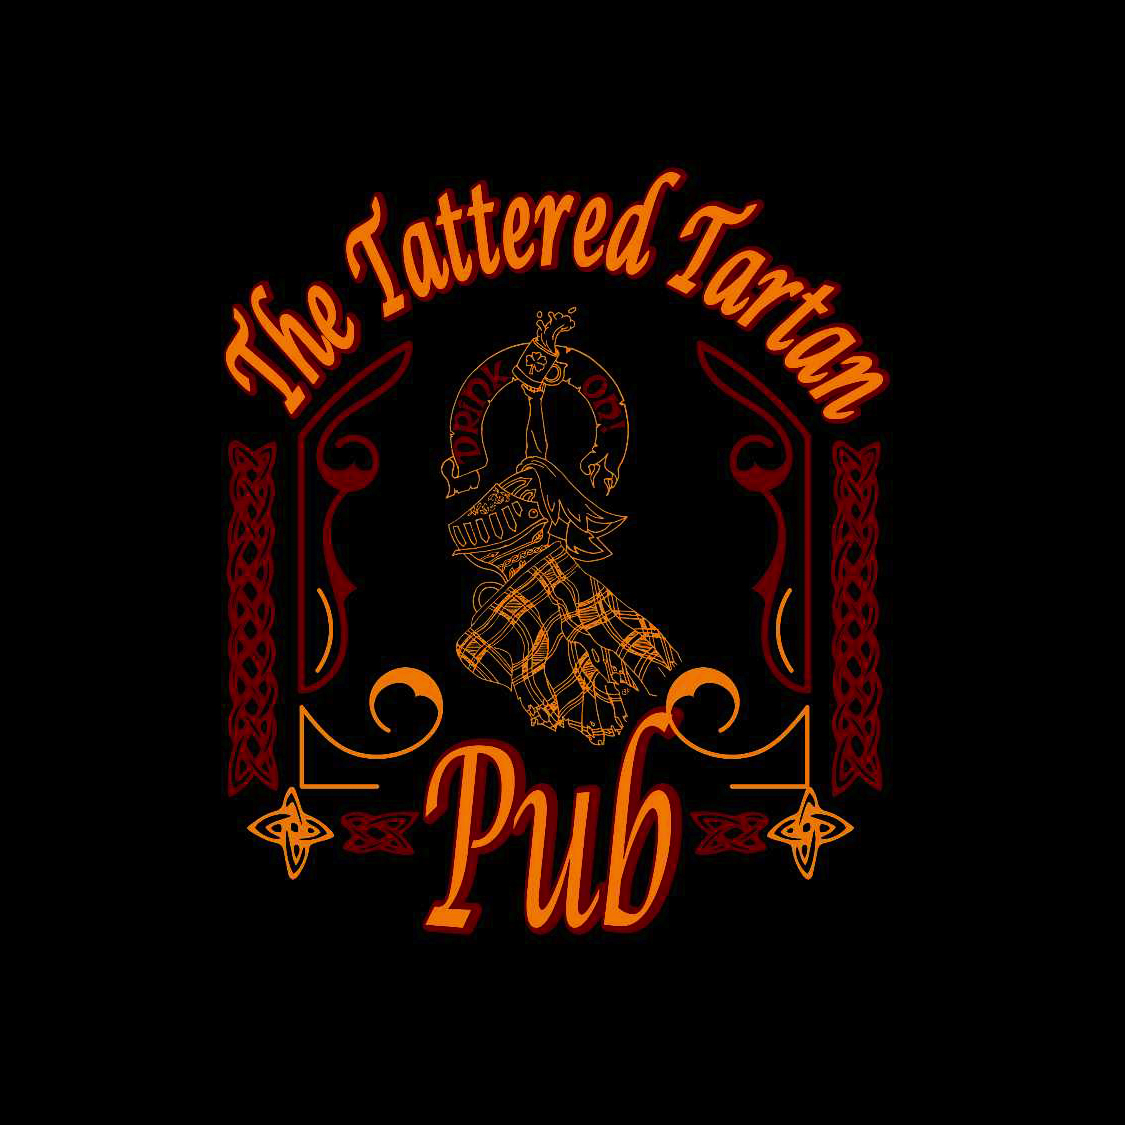 The Tattered Tartan Pub